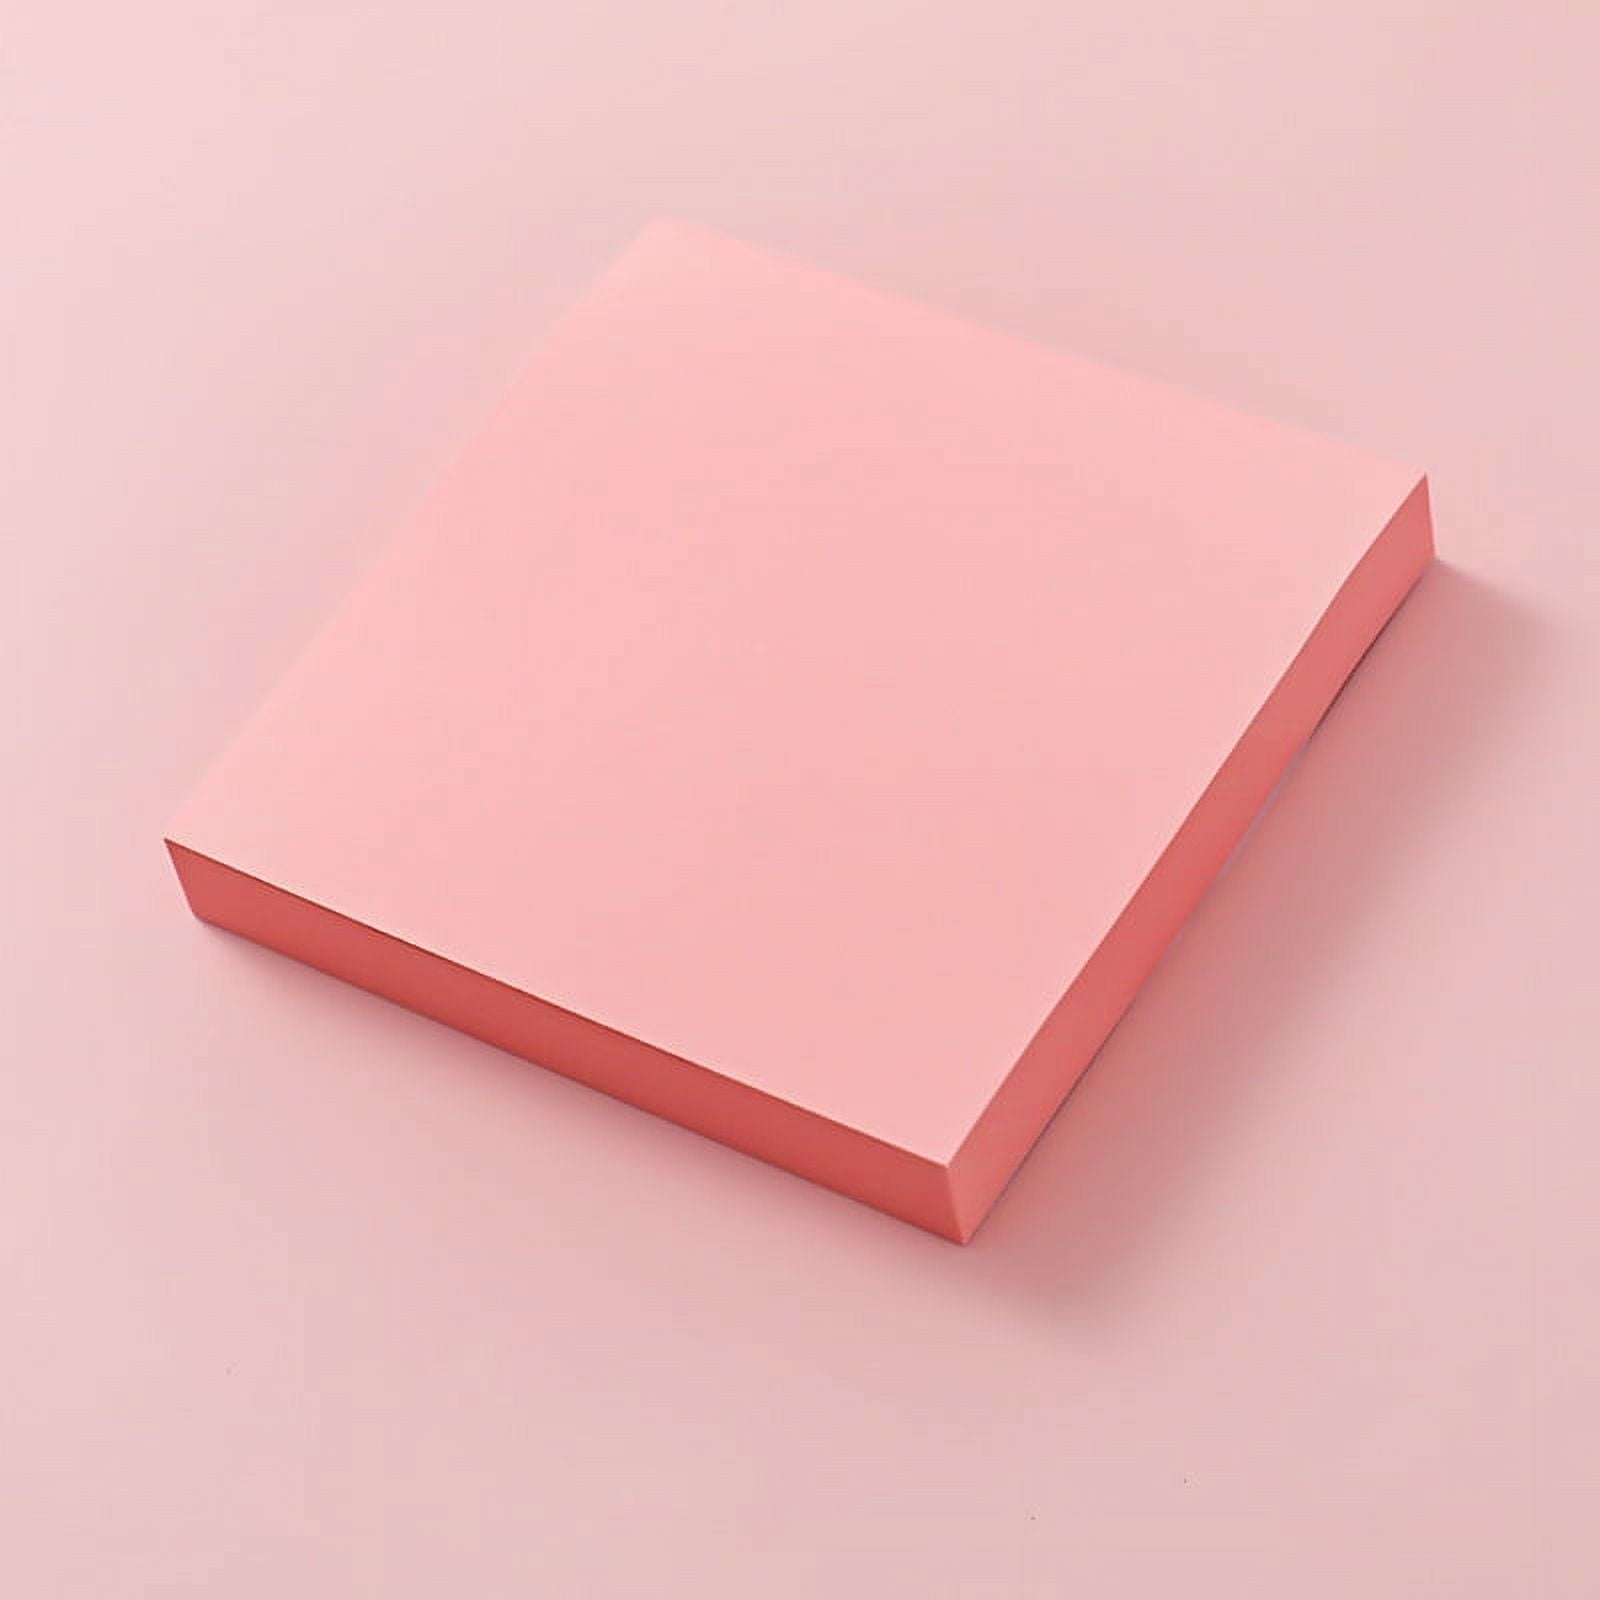 Roller Sticky Notes - Pink — Stationery Pal